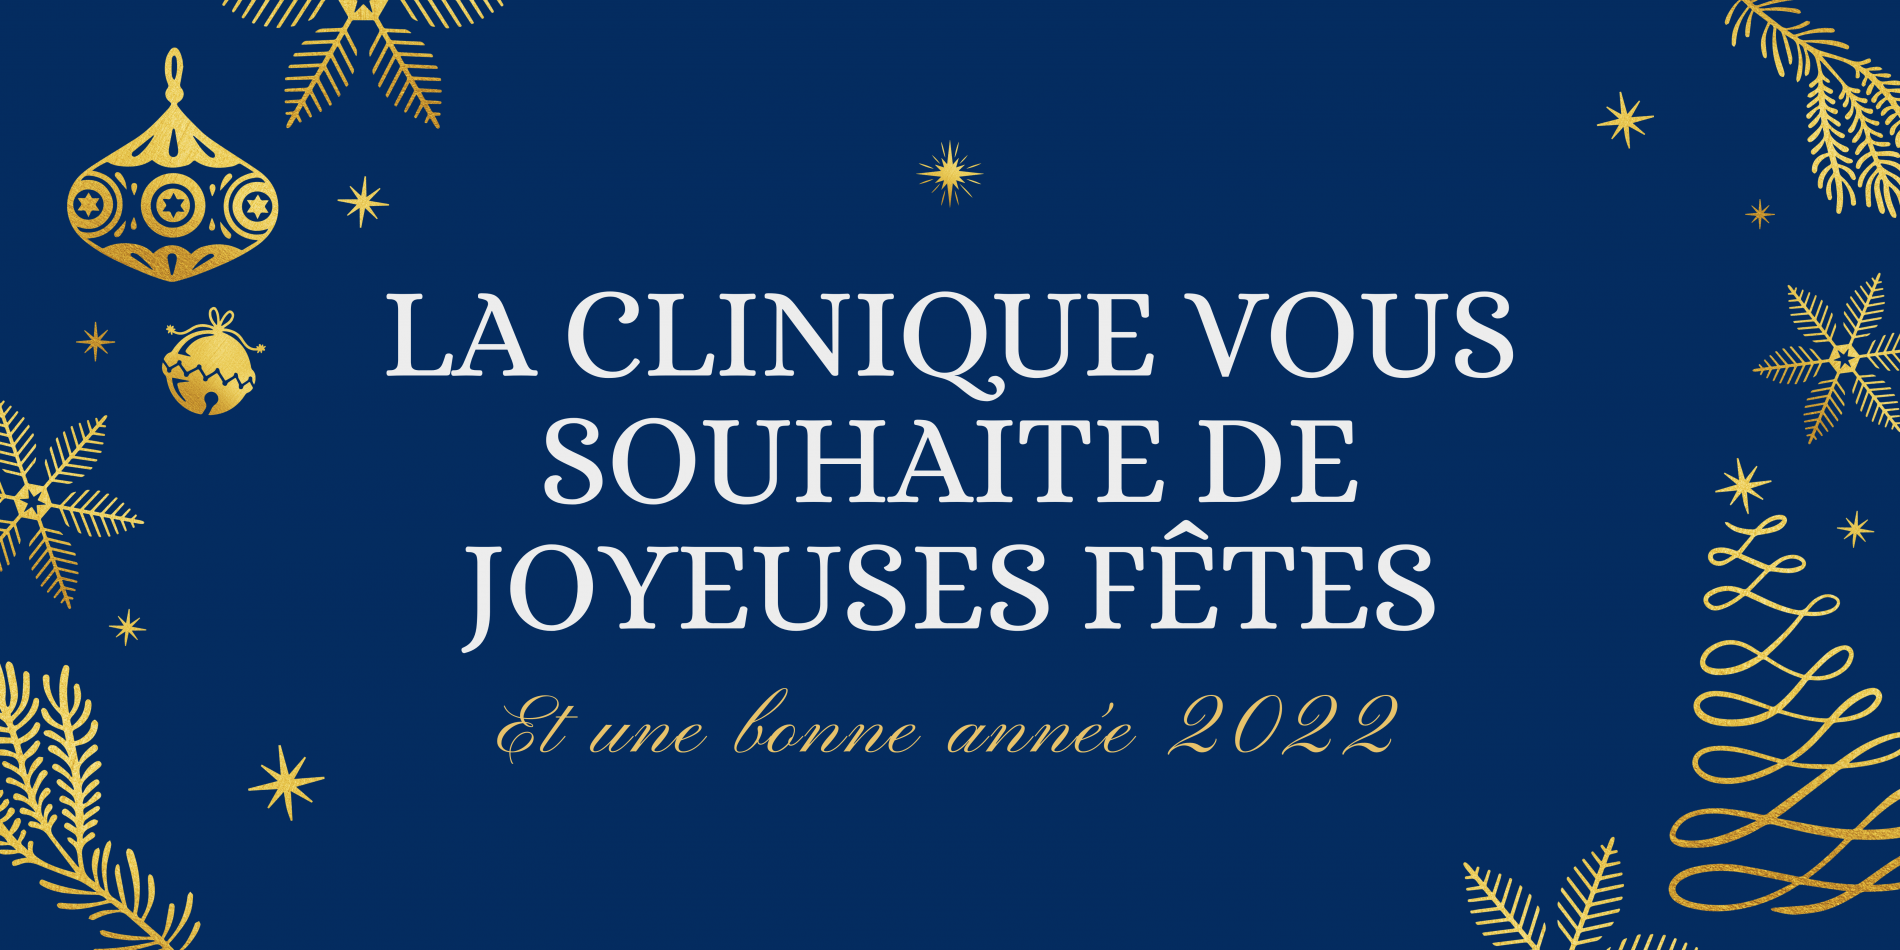 La Clinique de l'Yvette vous souhaite de joyeuses fêtes et une bonne année 2022